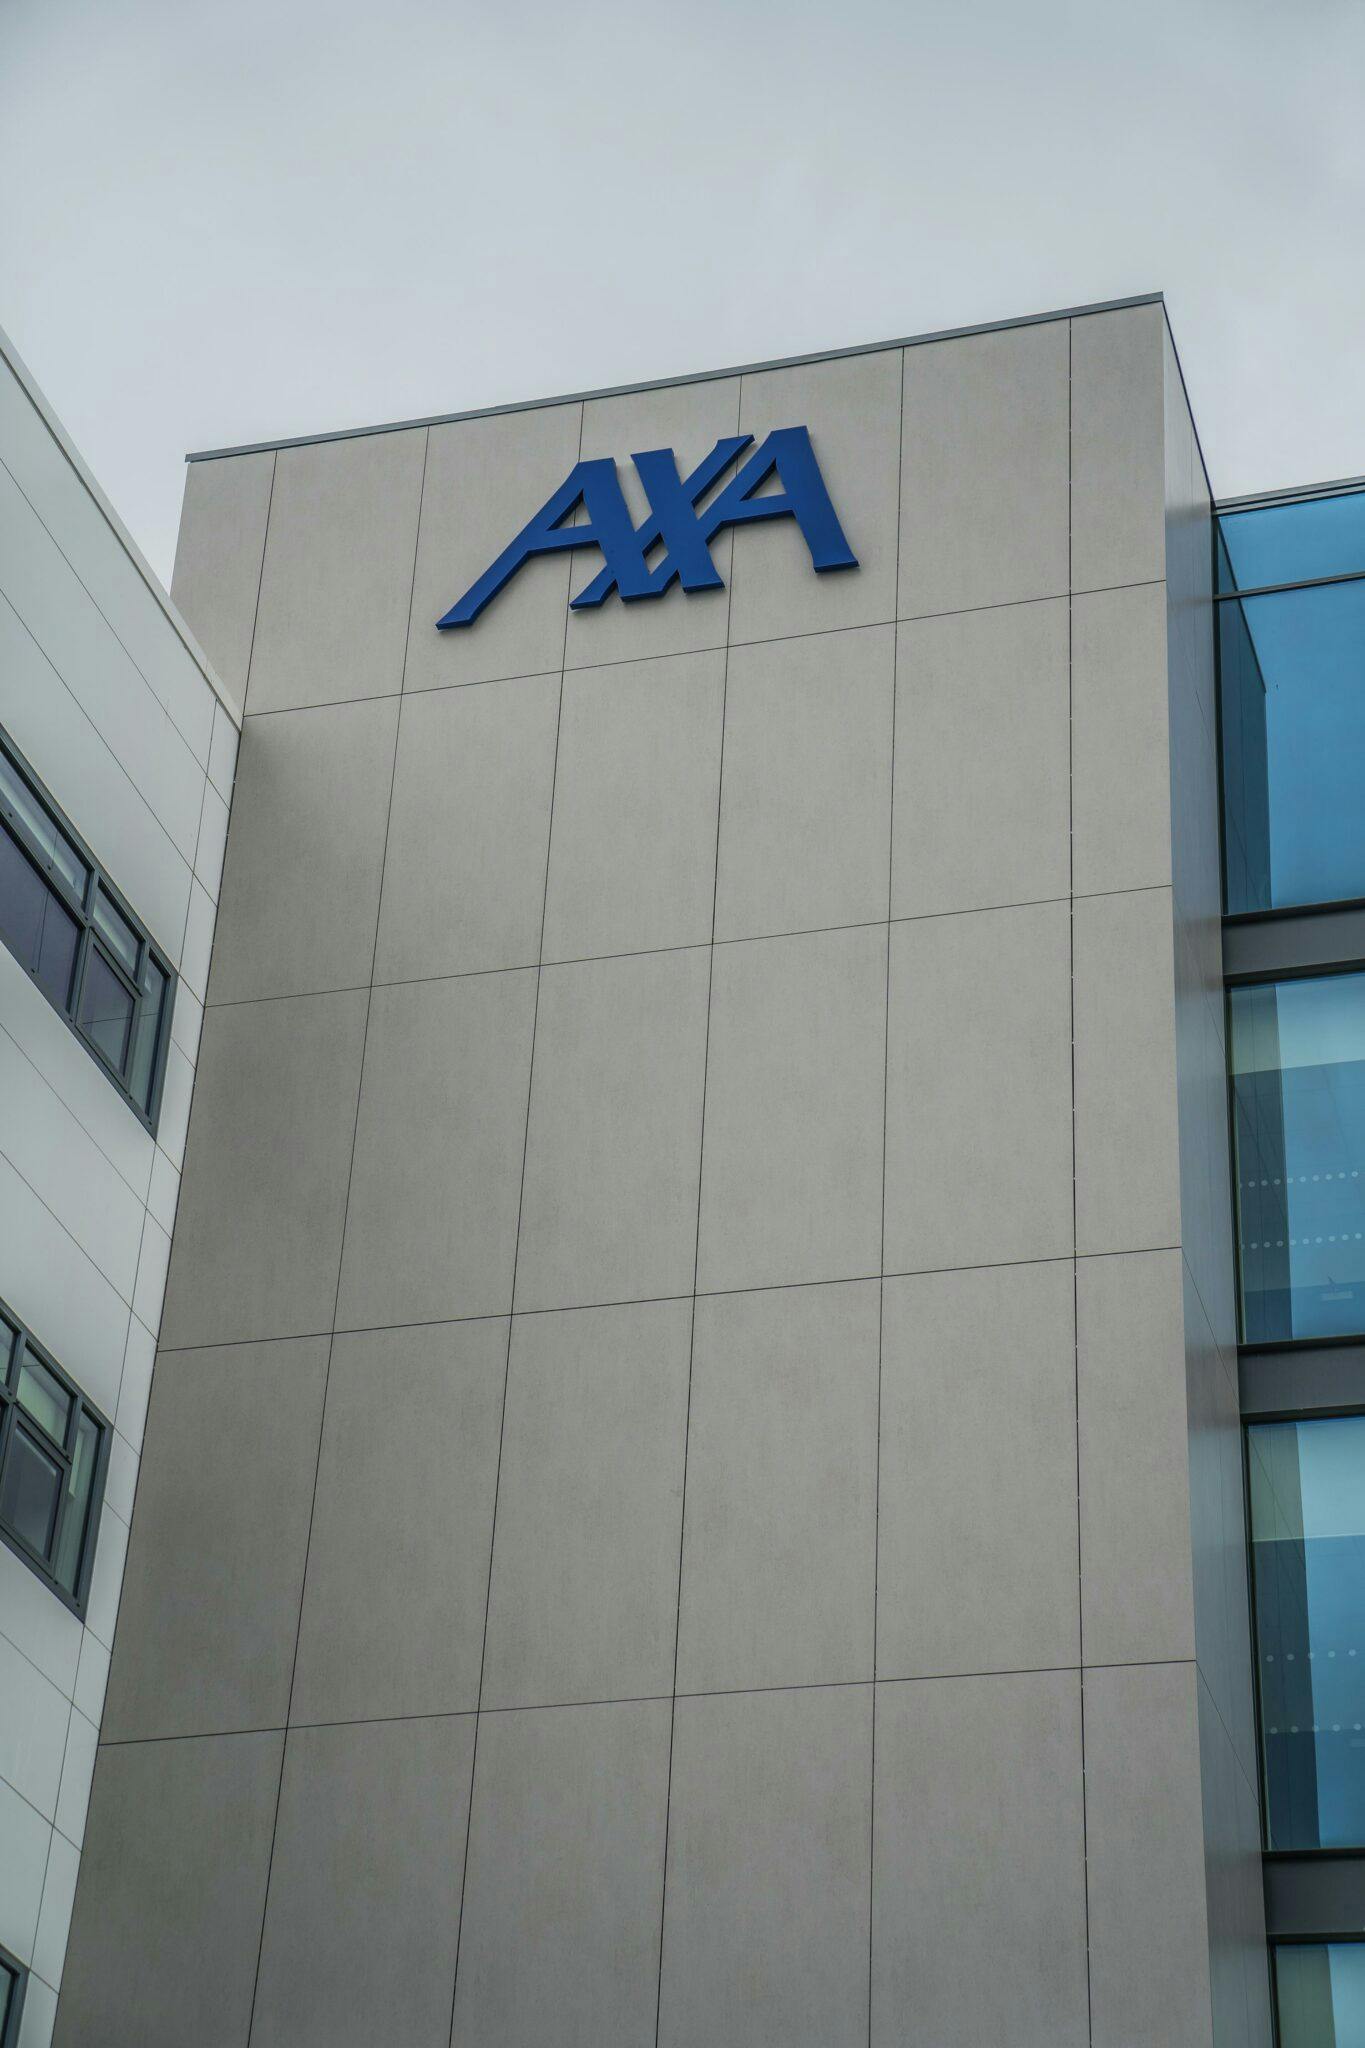 Numero immagine 41 della sezione corrente di AXA building di Cosentino Italia